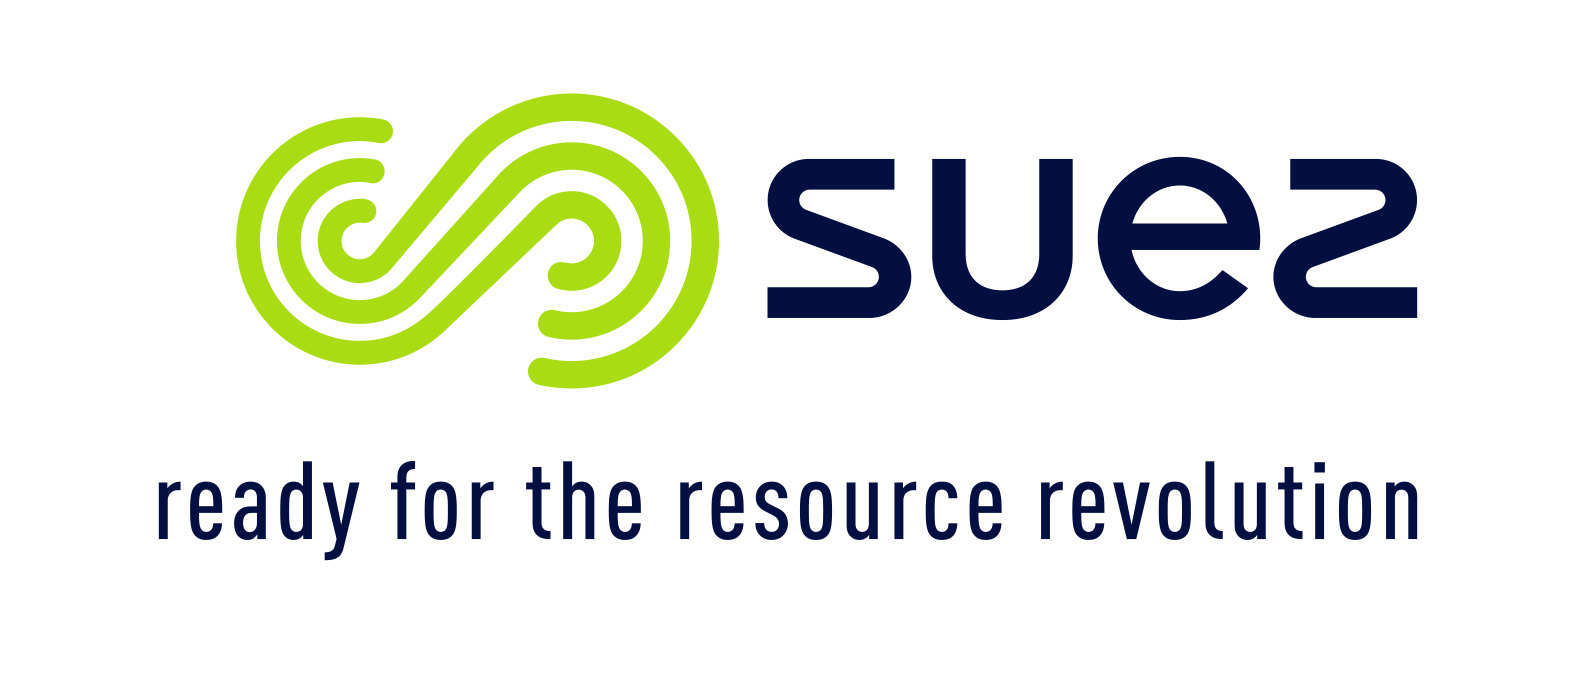 Suez Logo - SUEZ - Smart Health